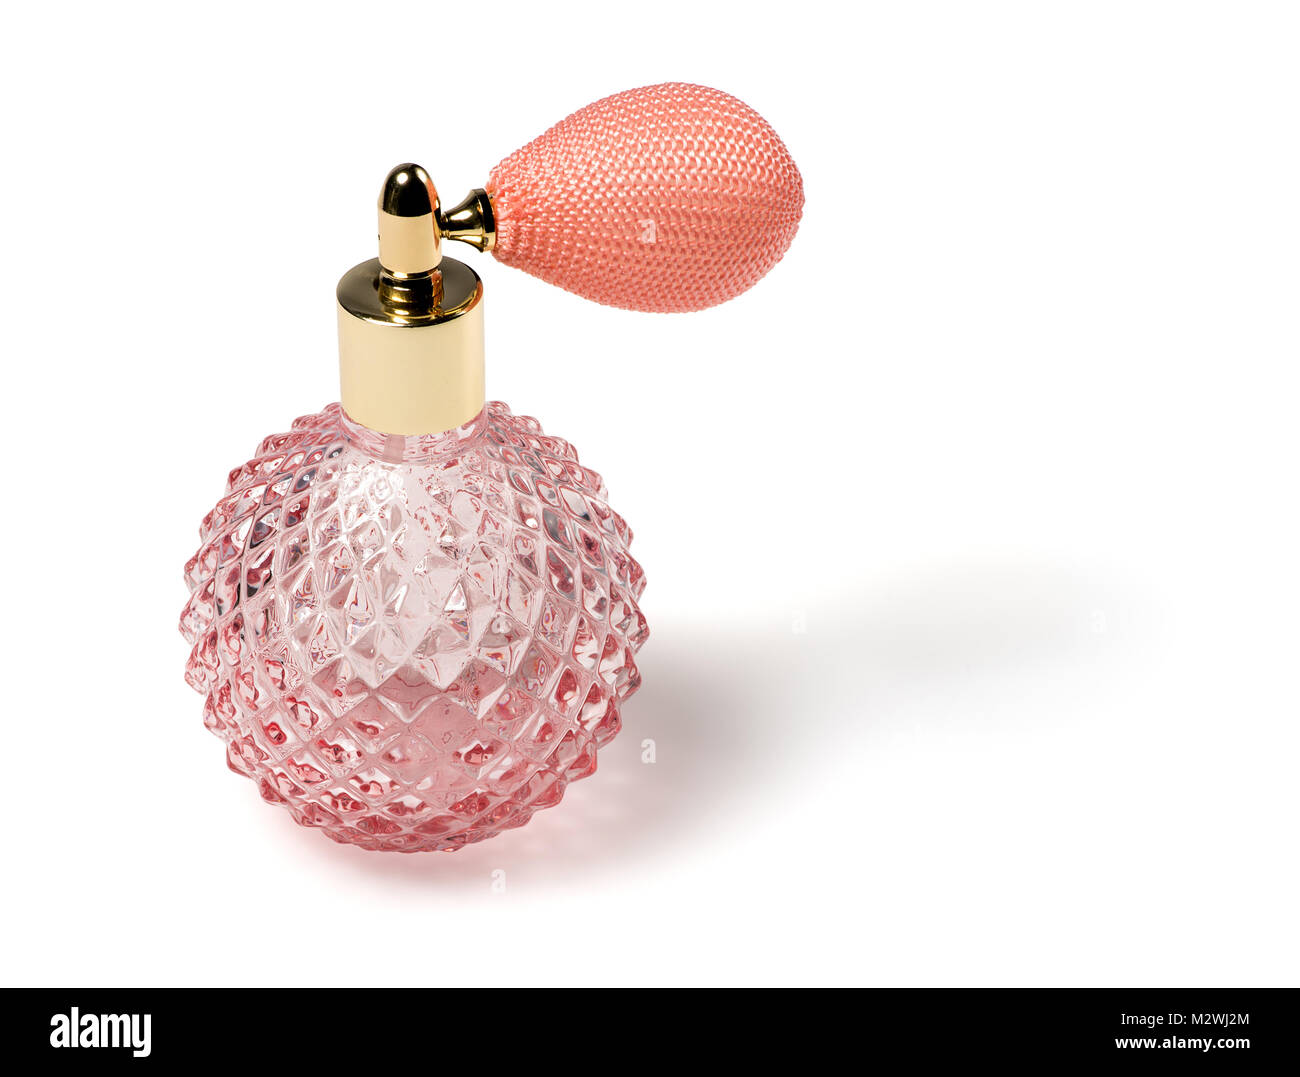 Runde rosa geschliffenes Glas Parfüm Flasche mit einem Zerstäuber Spray auf  einen weißen Hintergrund mit Schatten Stockfotografie - Alamy